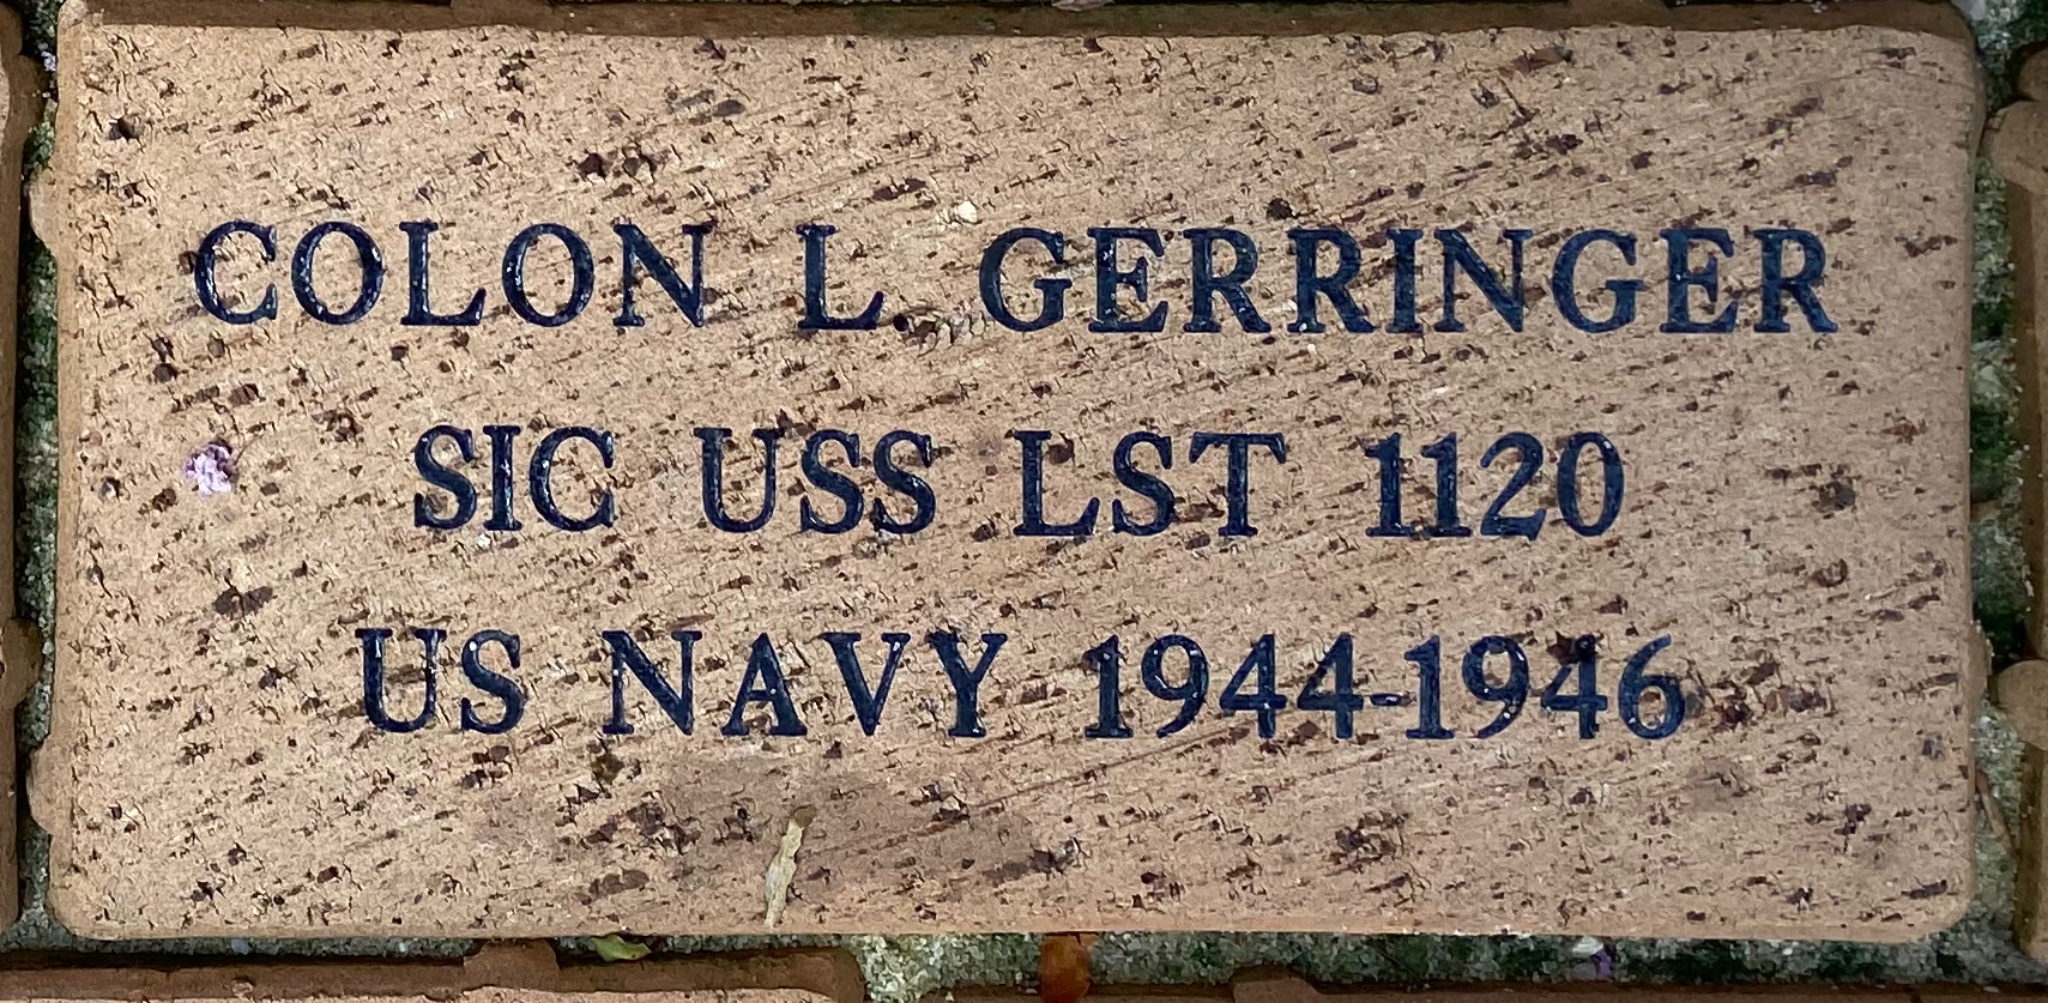 COLON L GERRINGER SIC USS LST 1120 US NAVY 1944-1946